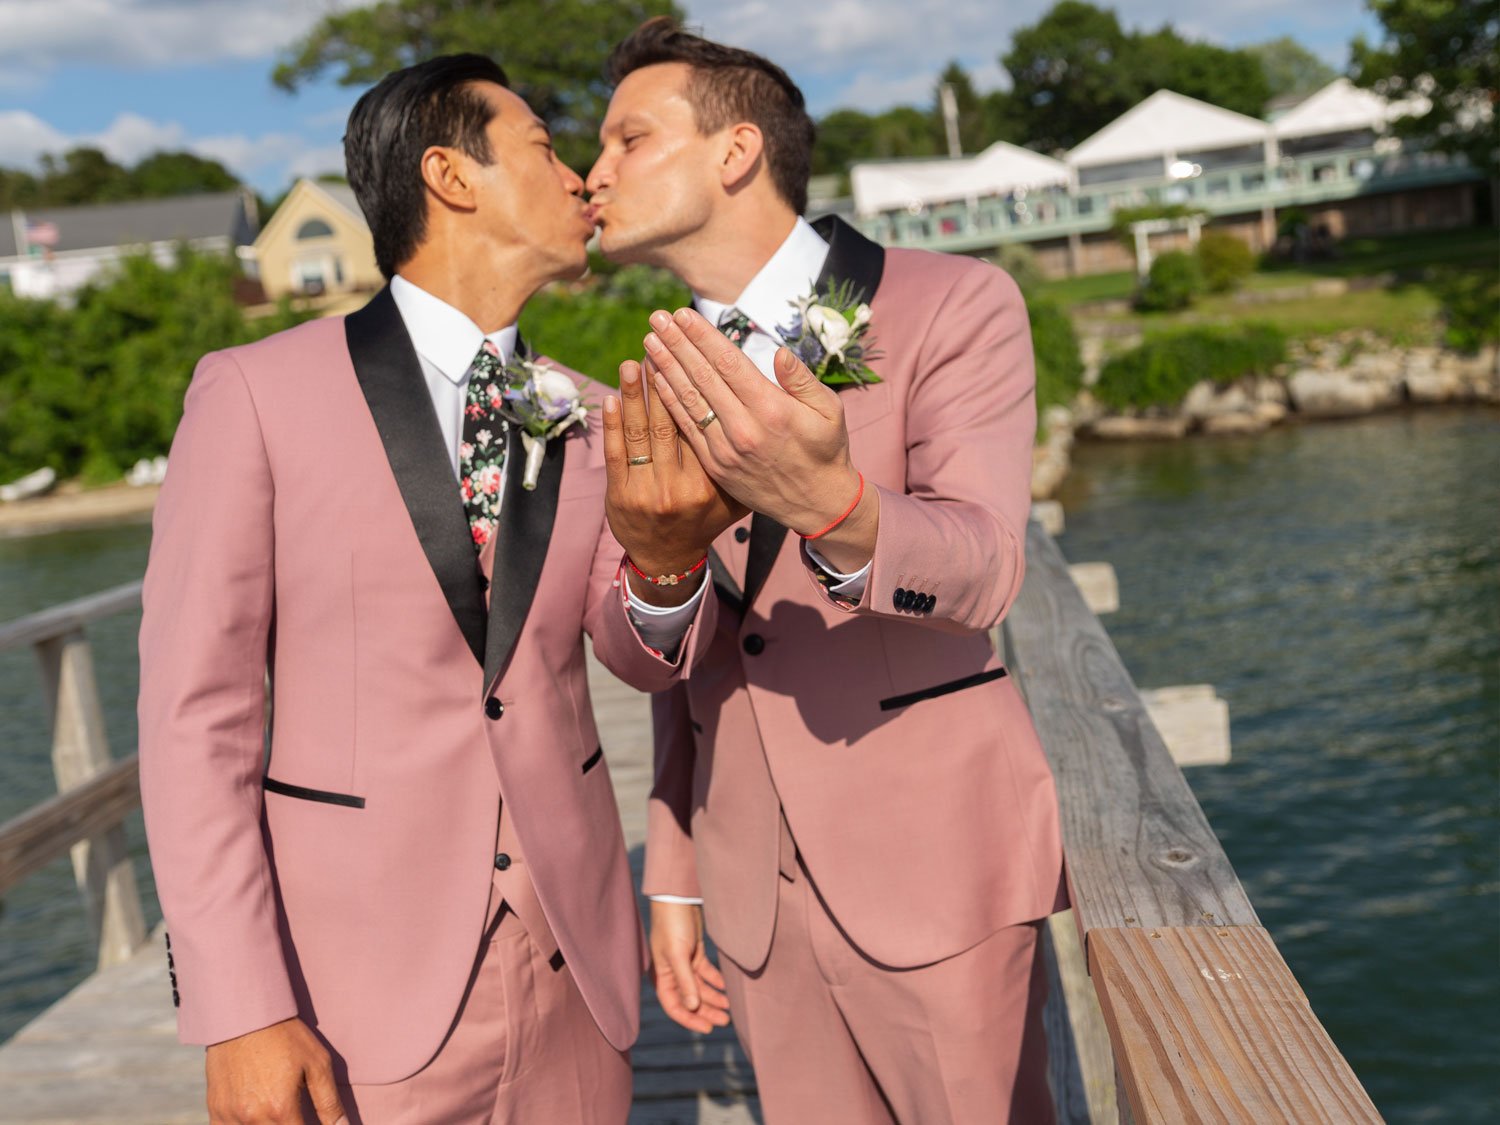 Black Tie Catering Maine Weddings Peaks Island